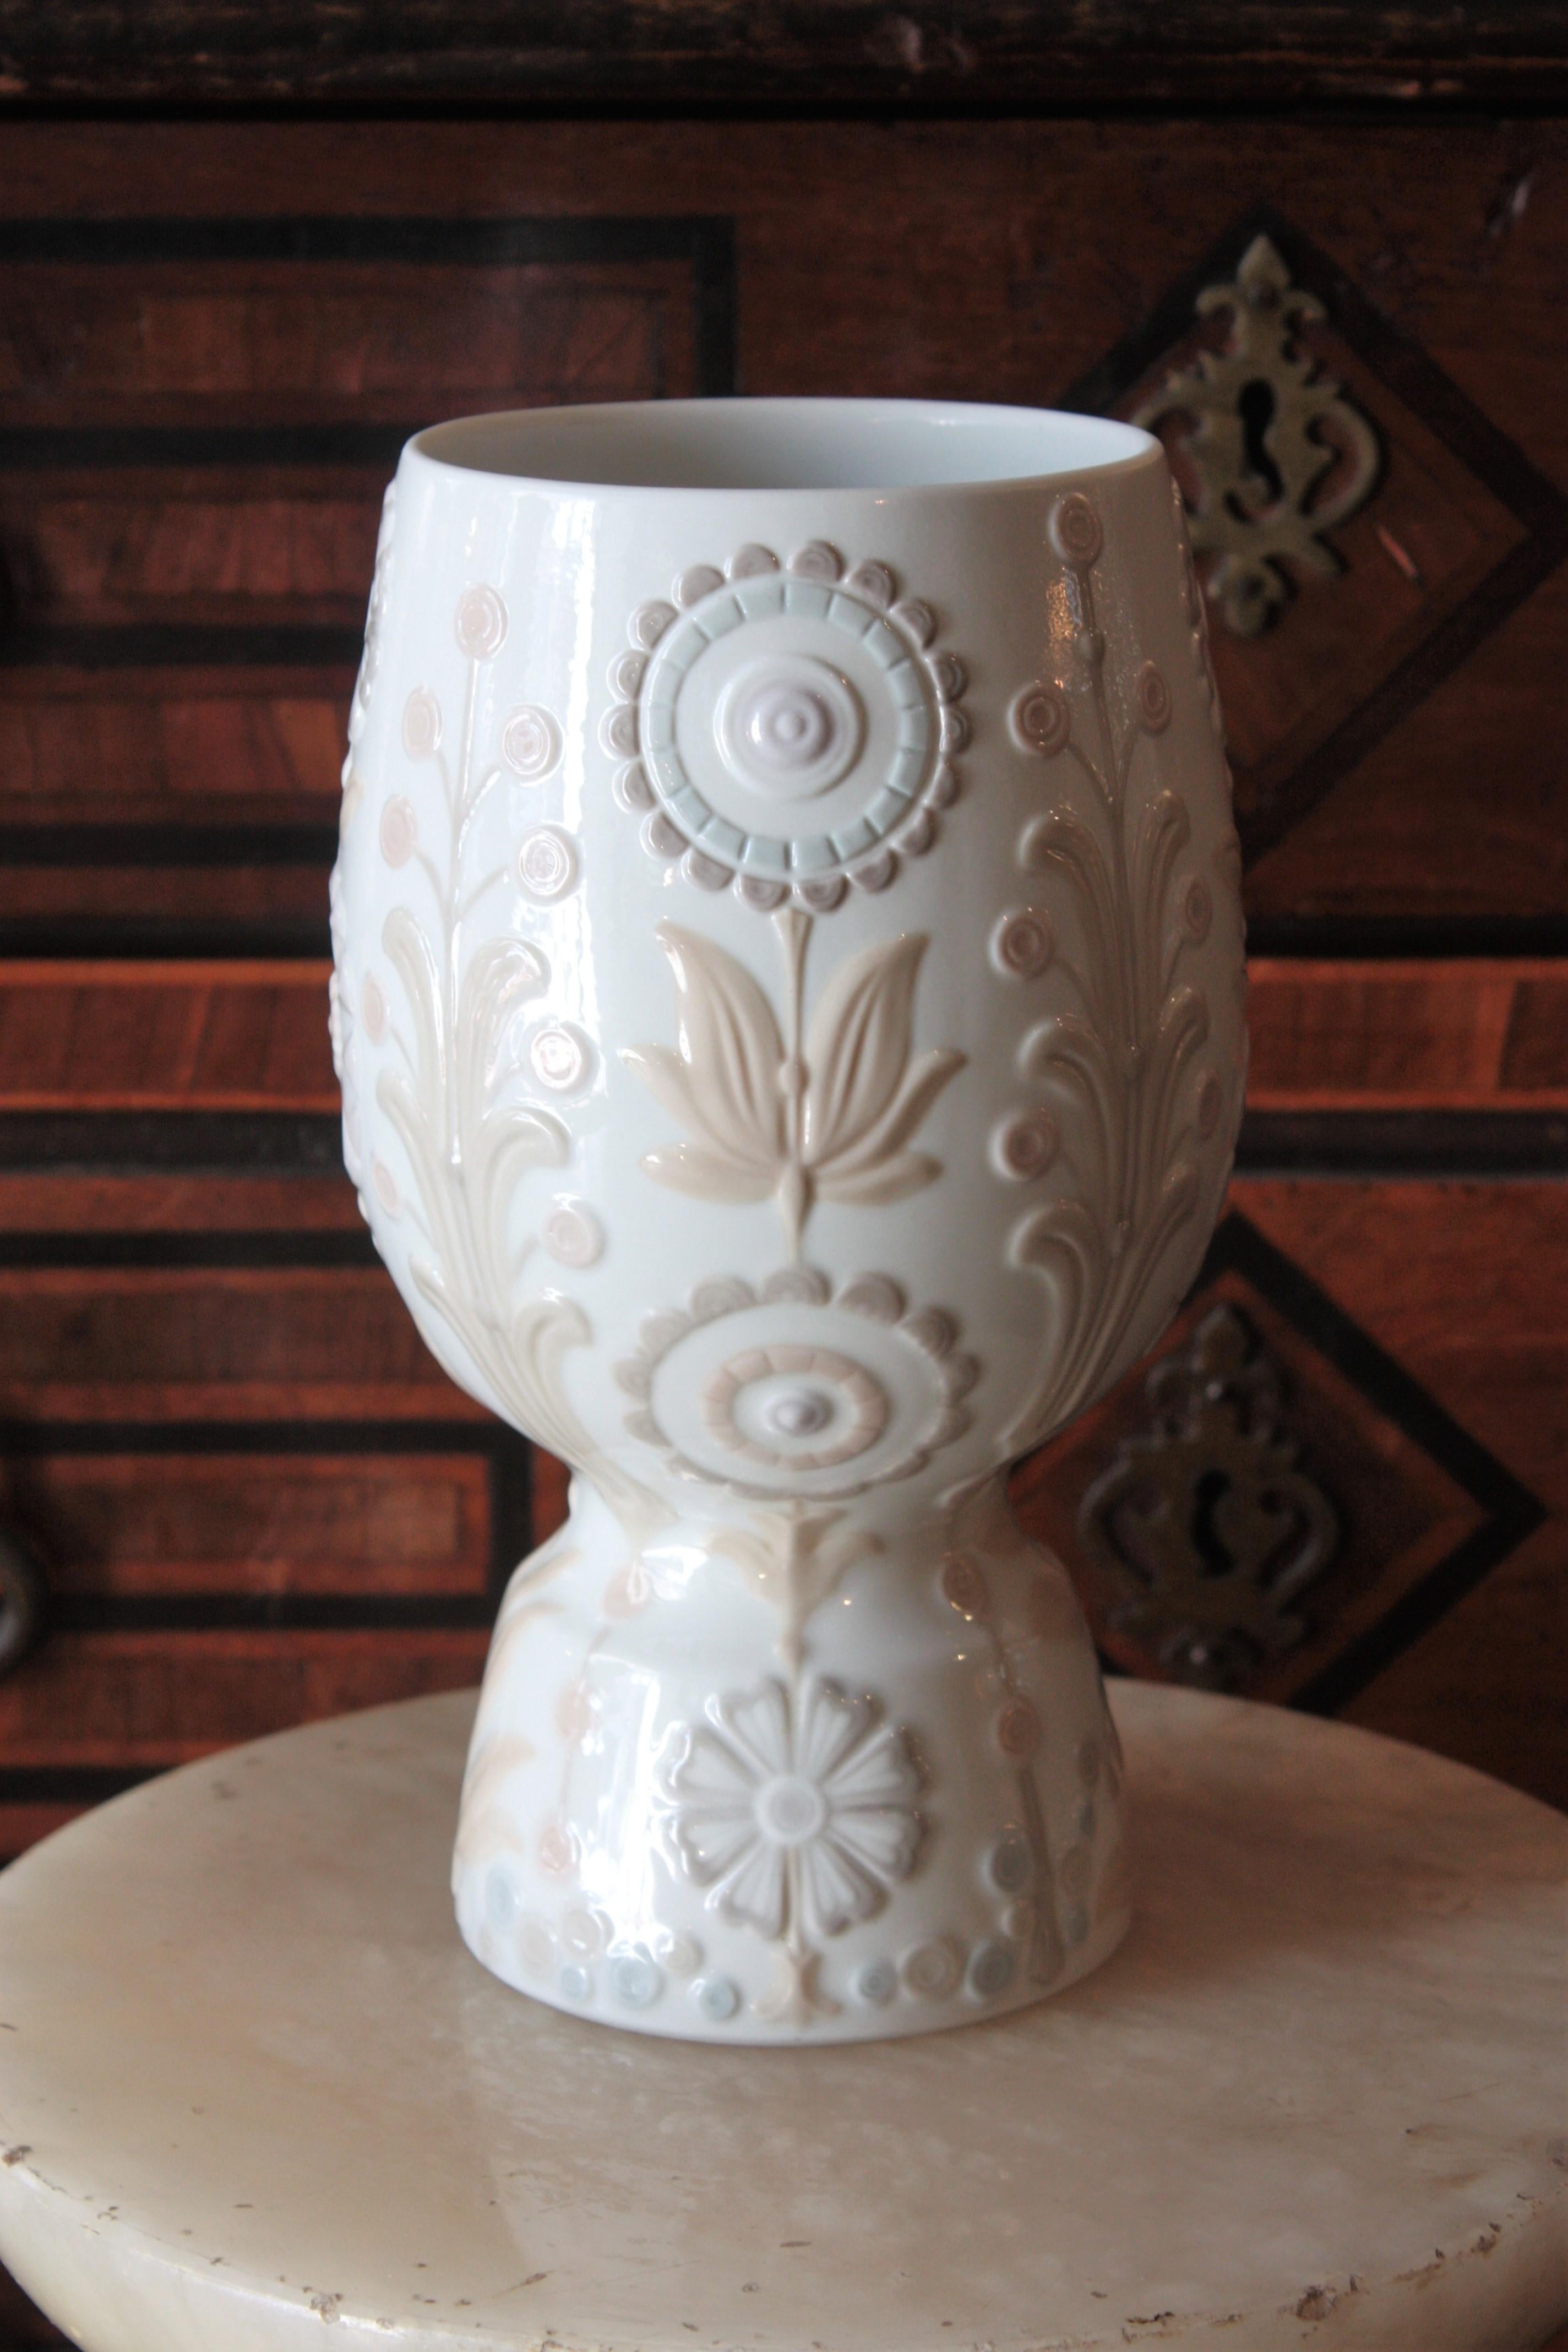 Un bellissimo vaso floreale in porcellana disegnato da Julio Fernández e prodotto da Lladró. Spagna, anni '70.
Questo elegante vaso in porcellana smaltata ha un design pulito con decorazioni floreali e di fogliame in colori pastello.
Condizioni